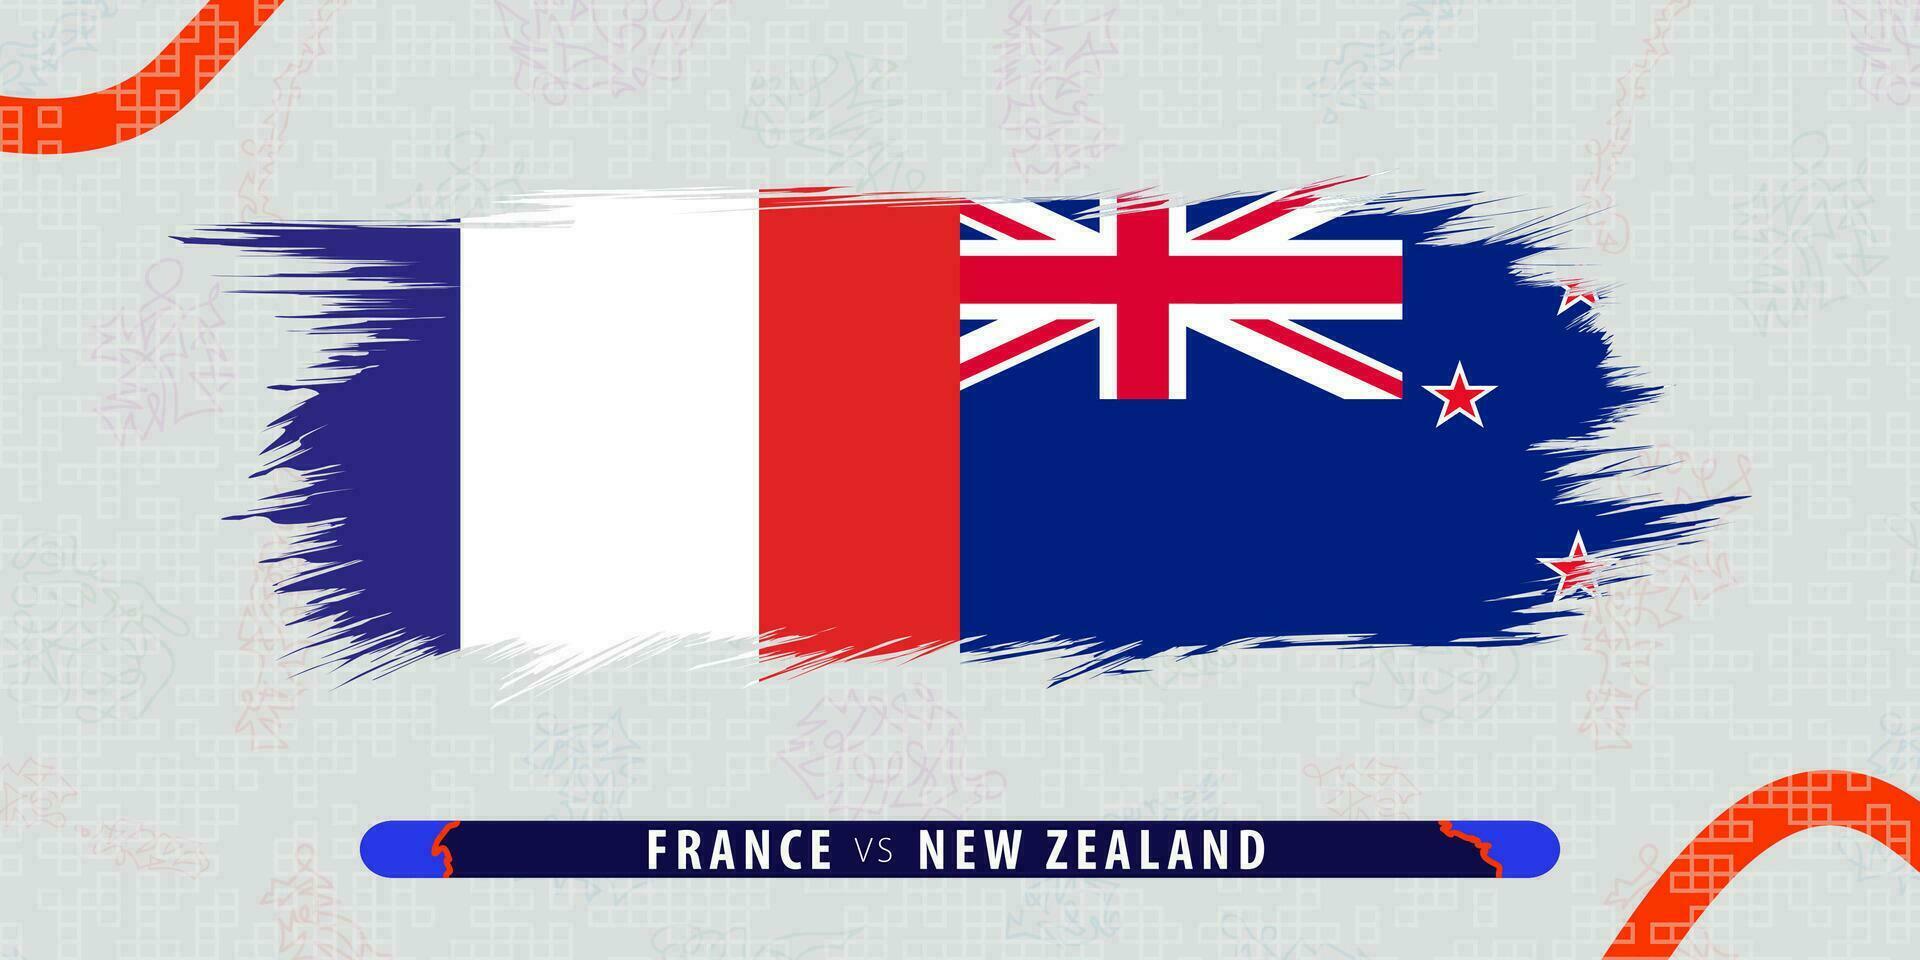 France contre Nouveau la zélande, international le rugby rencontre illustration dans coup de pinceau style. abstrait grungy icône pour le rugby correspondre. vecteur